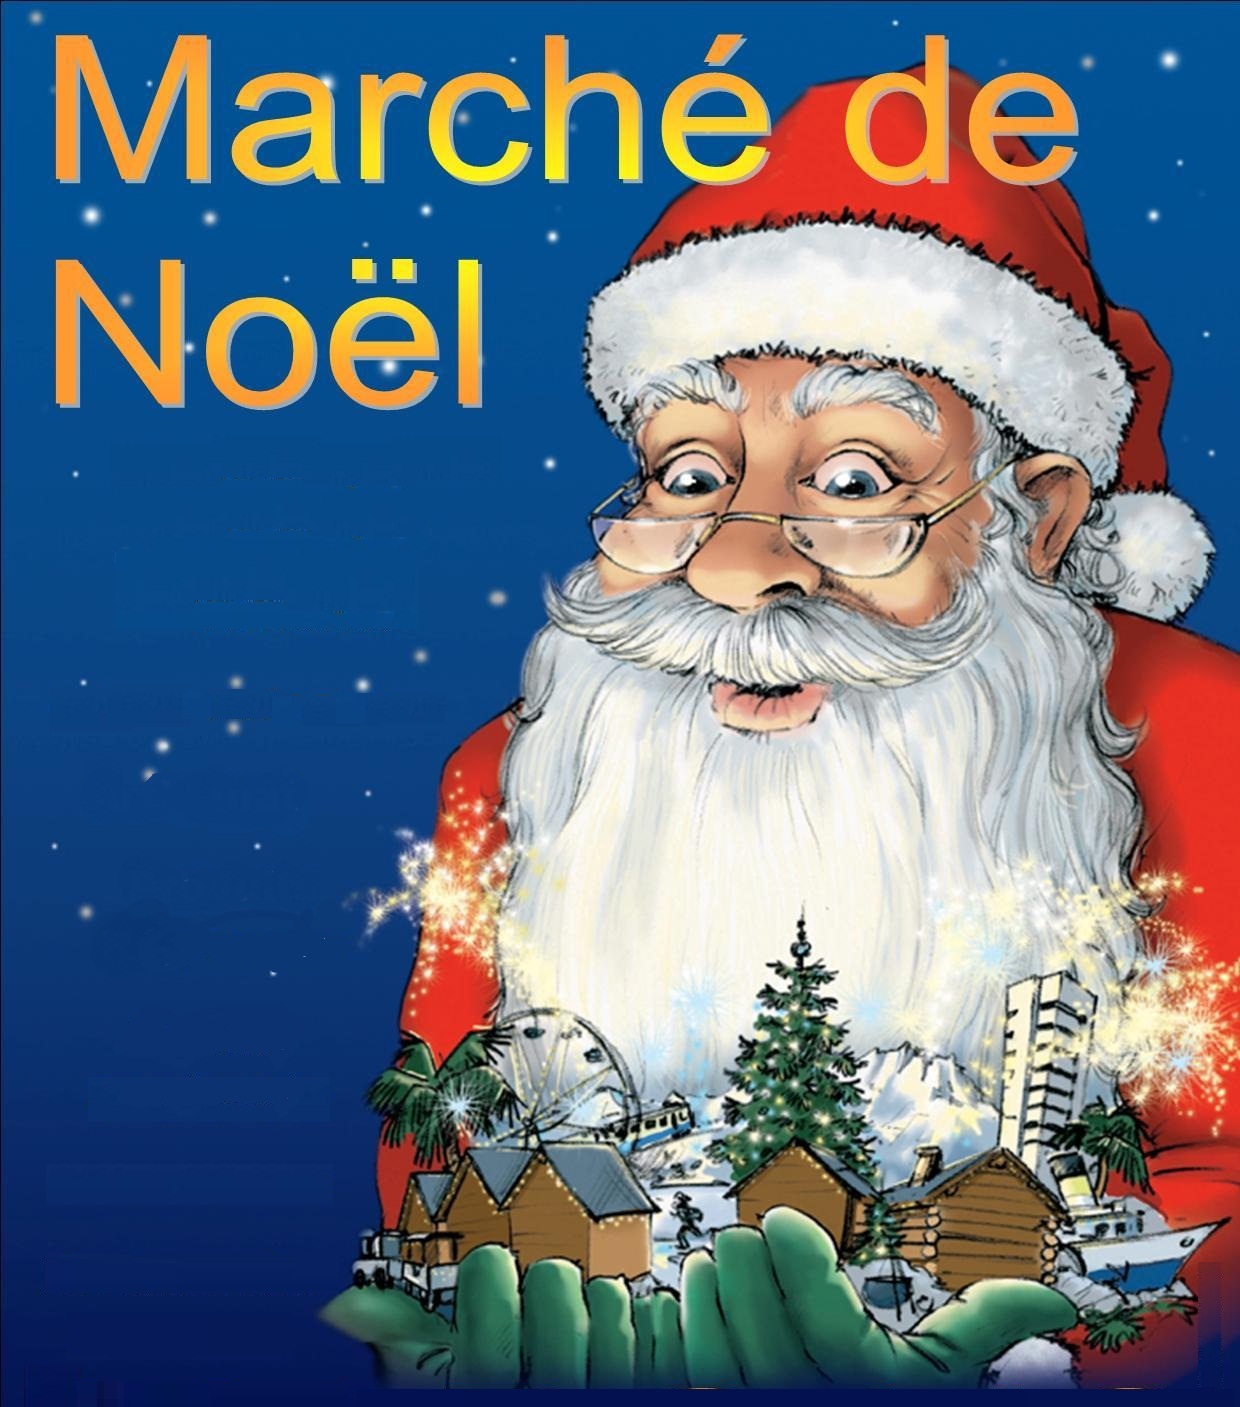 Marché de Noël 2020 – Annulation